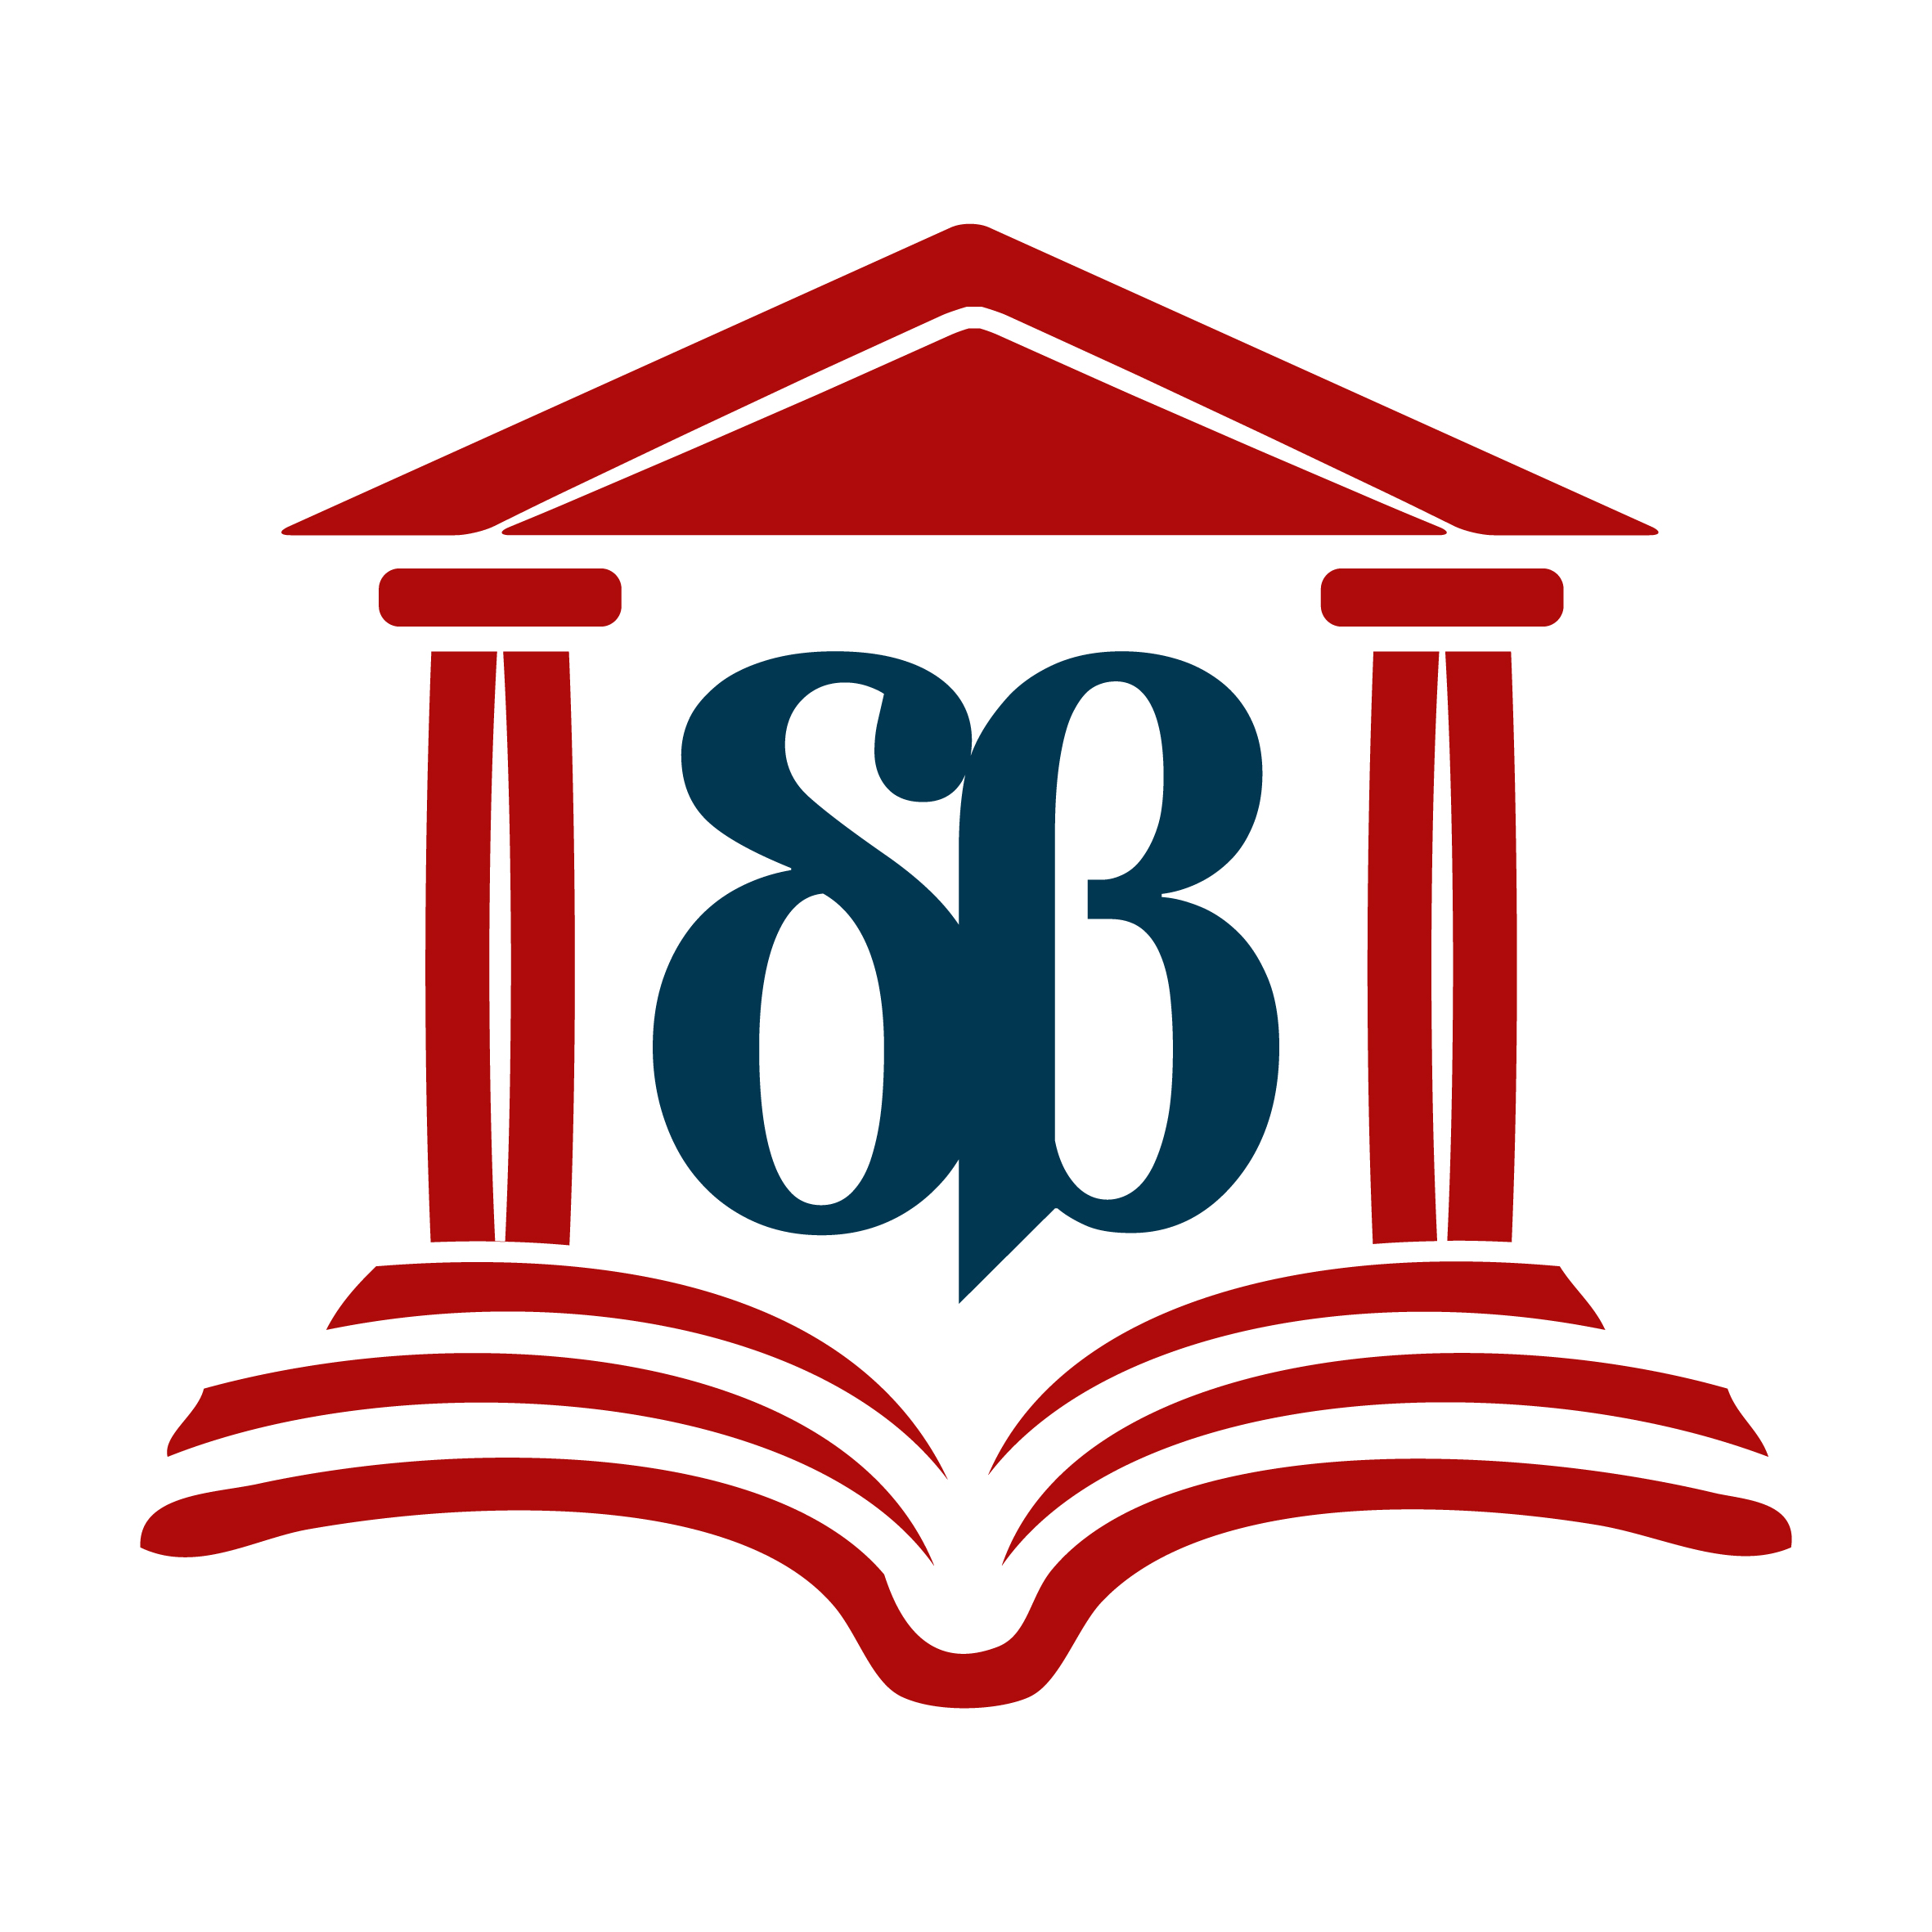 λογότυπο βιβλιοθήκης